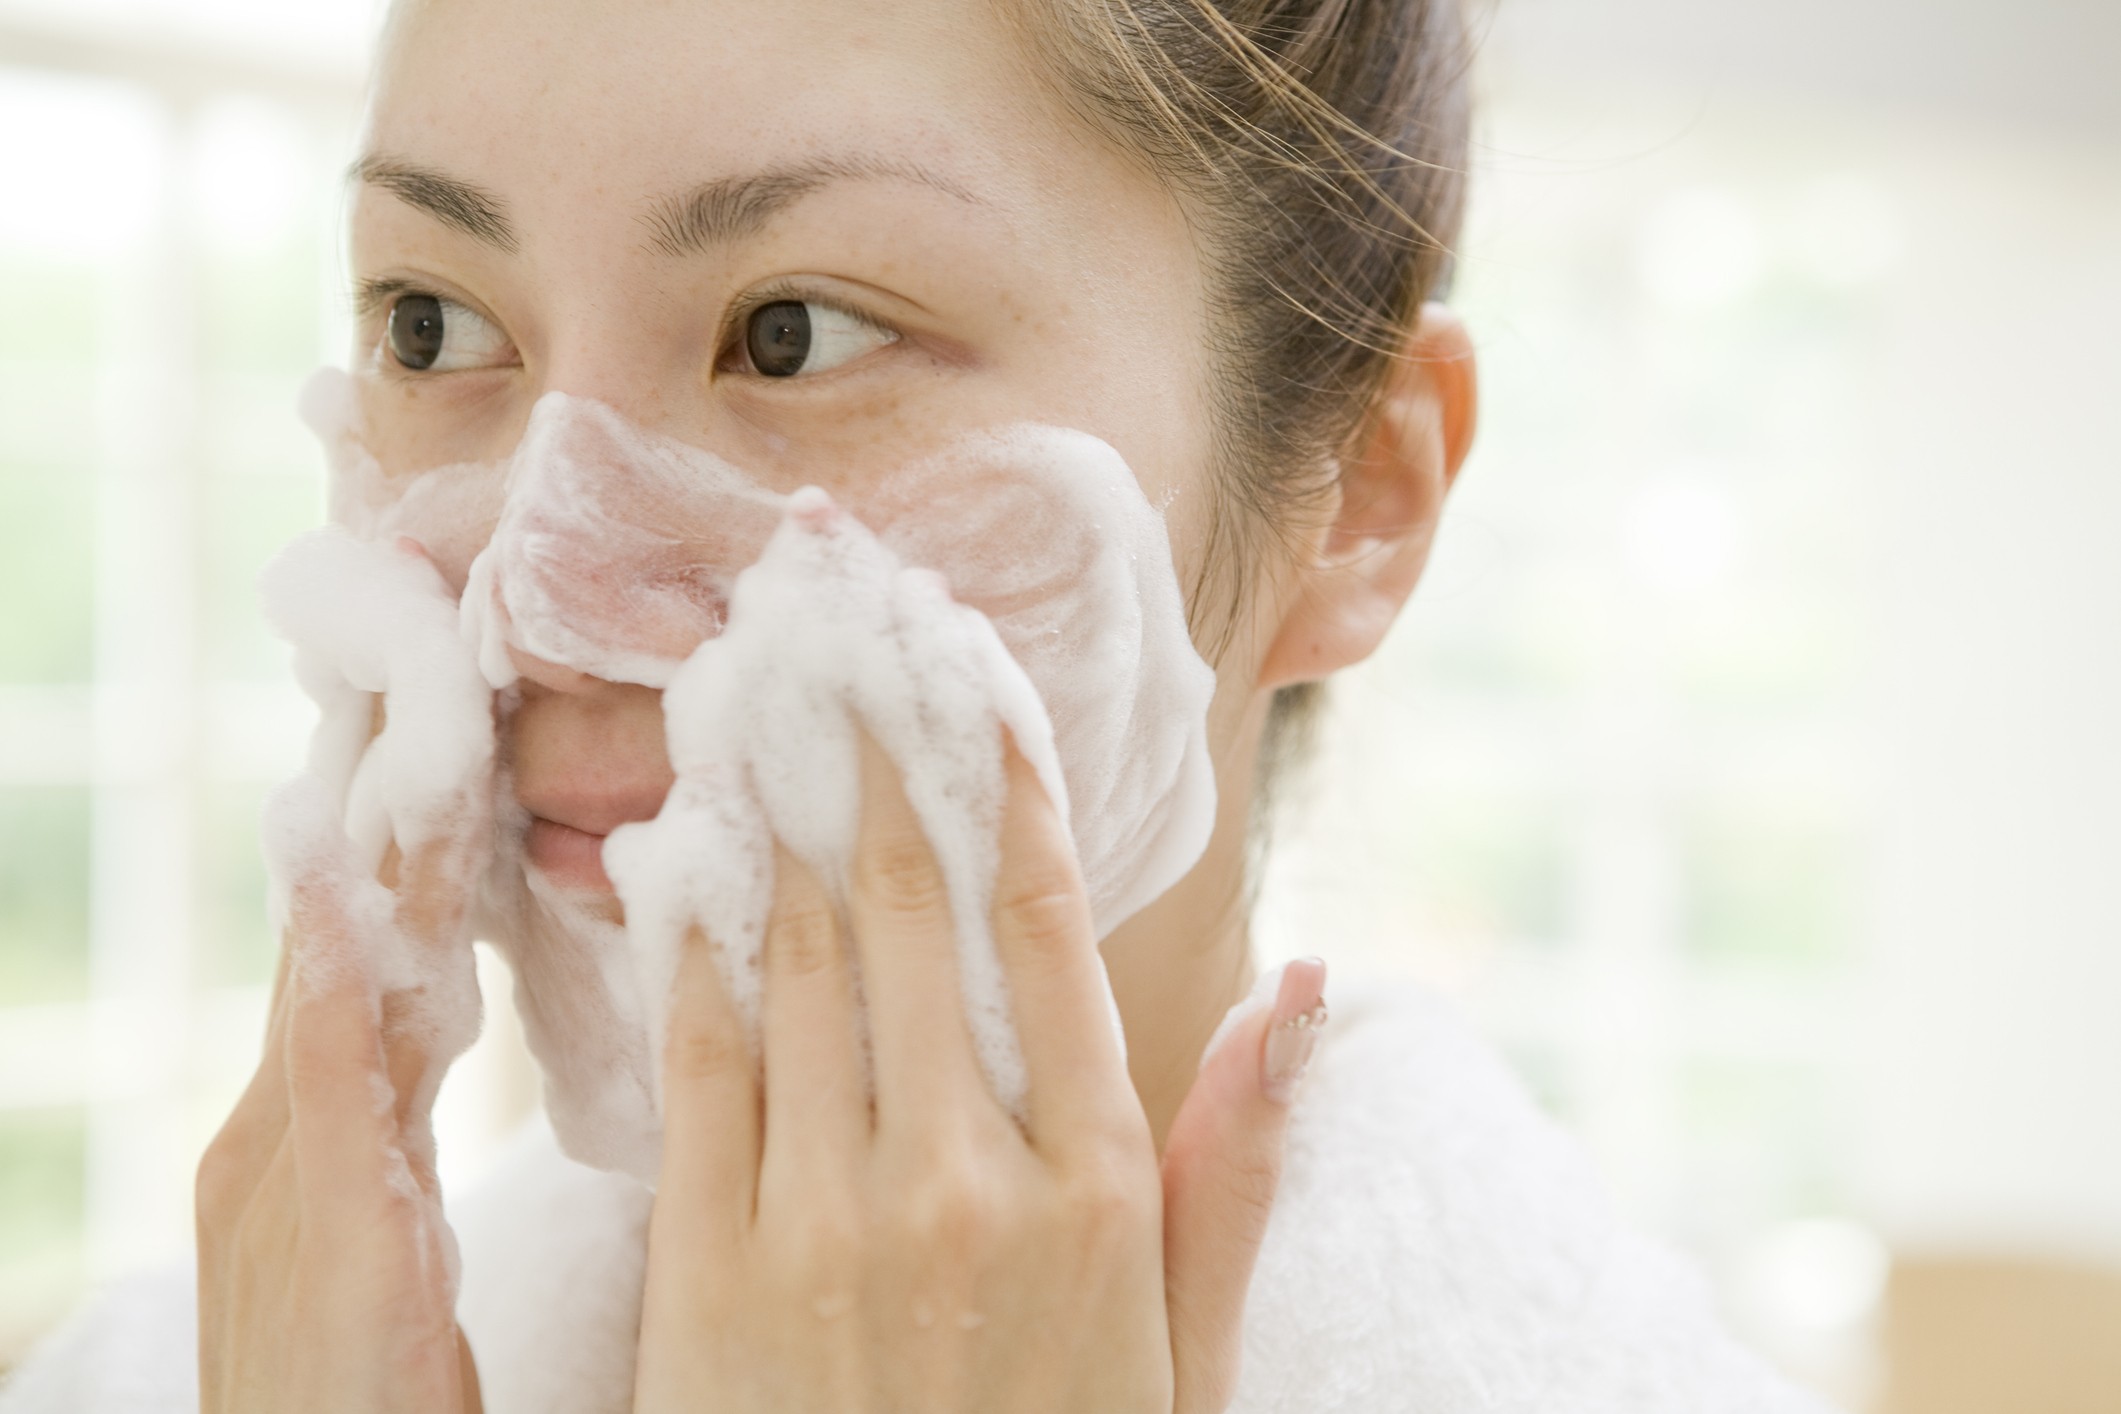 O gel facial é pobre em óleos e ceras, o que o torna ideal para peles oleosas (Foto: Getty Images)